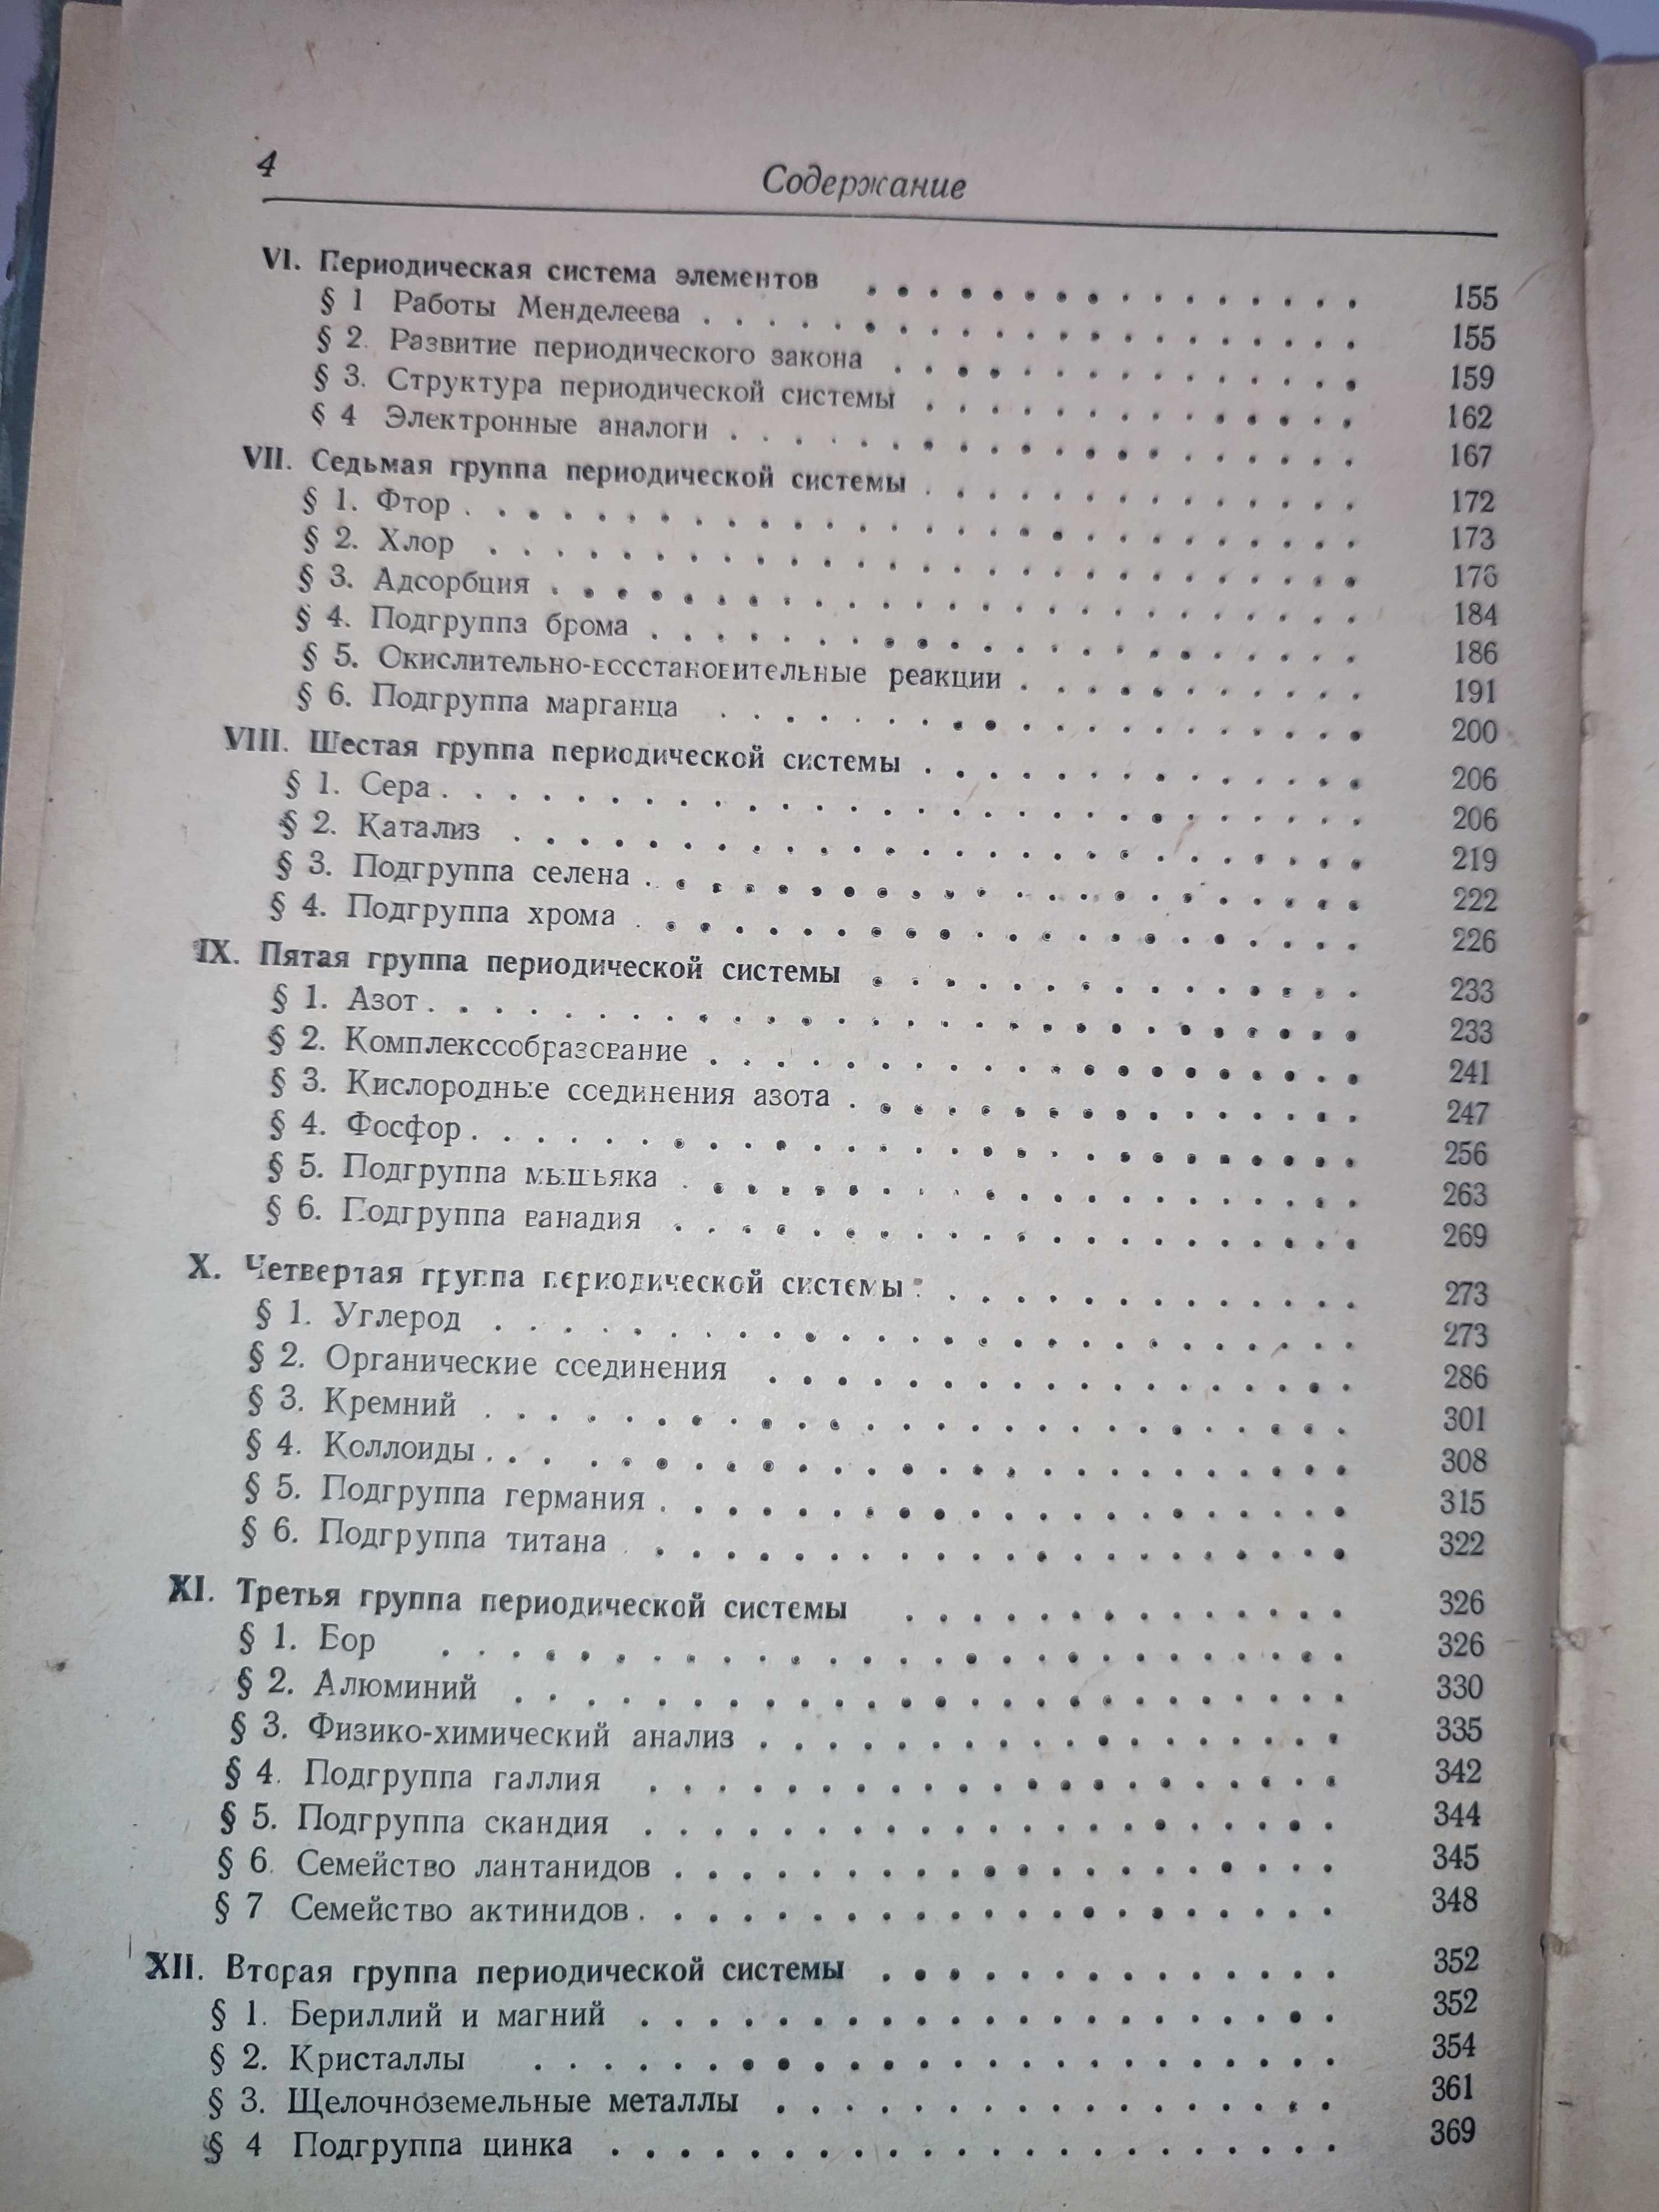 Учебник общей химии Некрасов